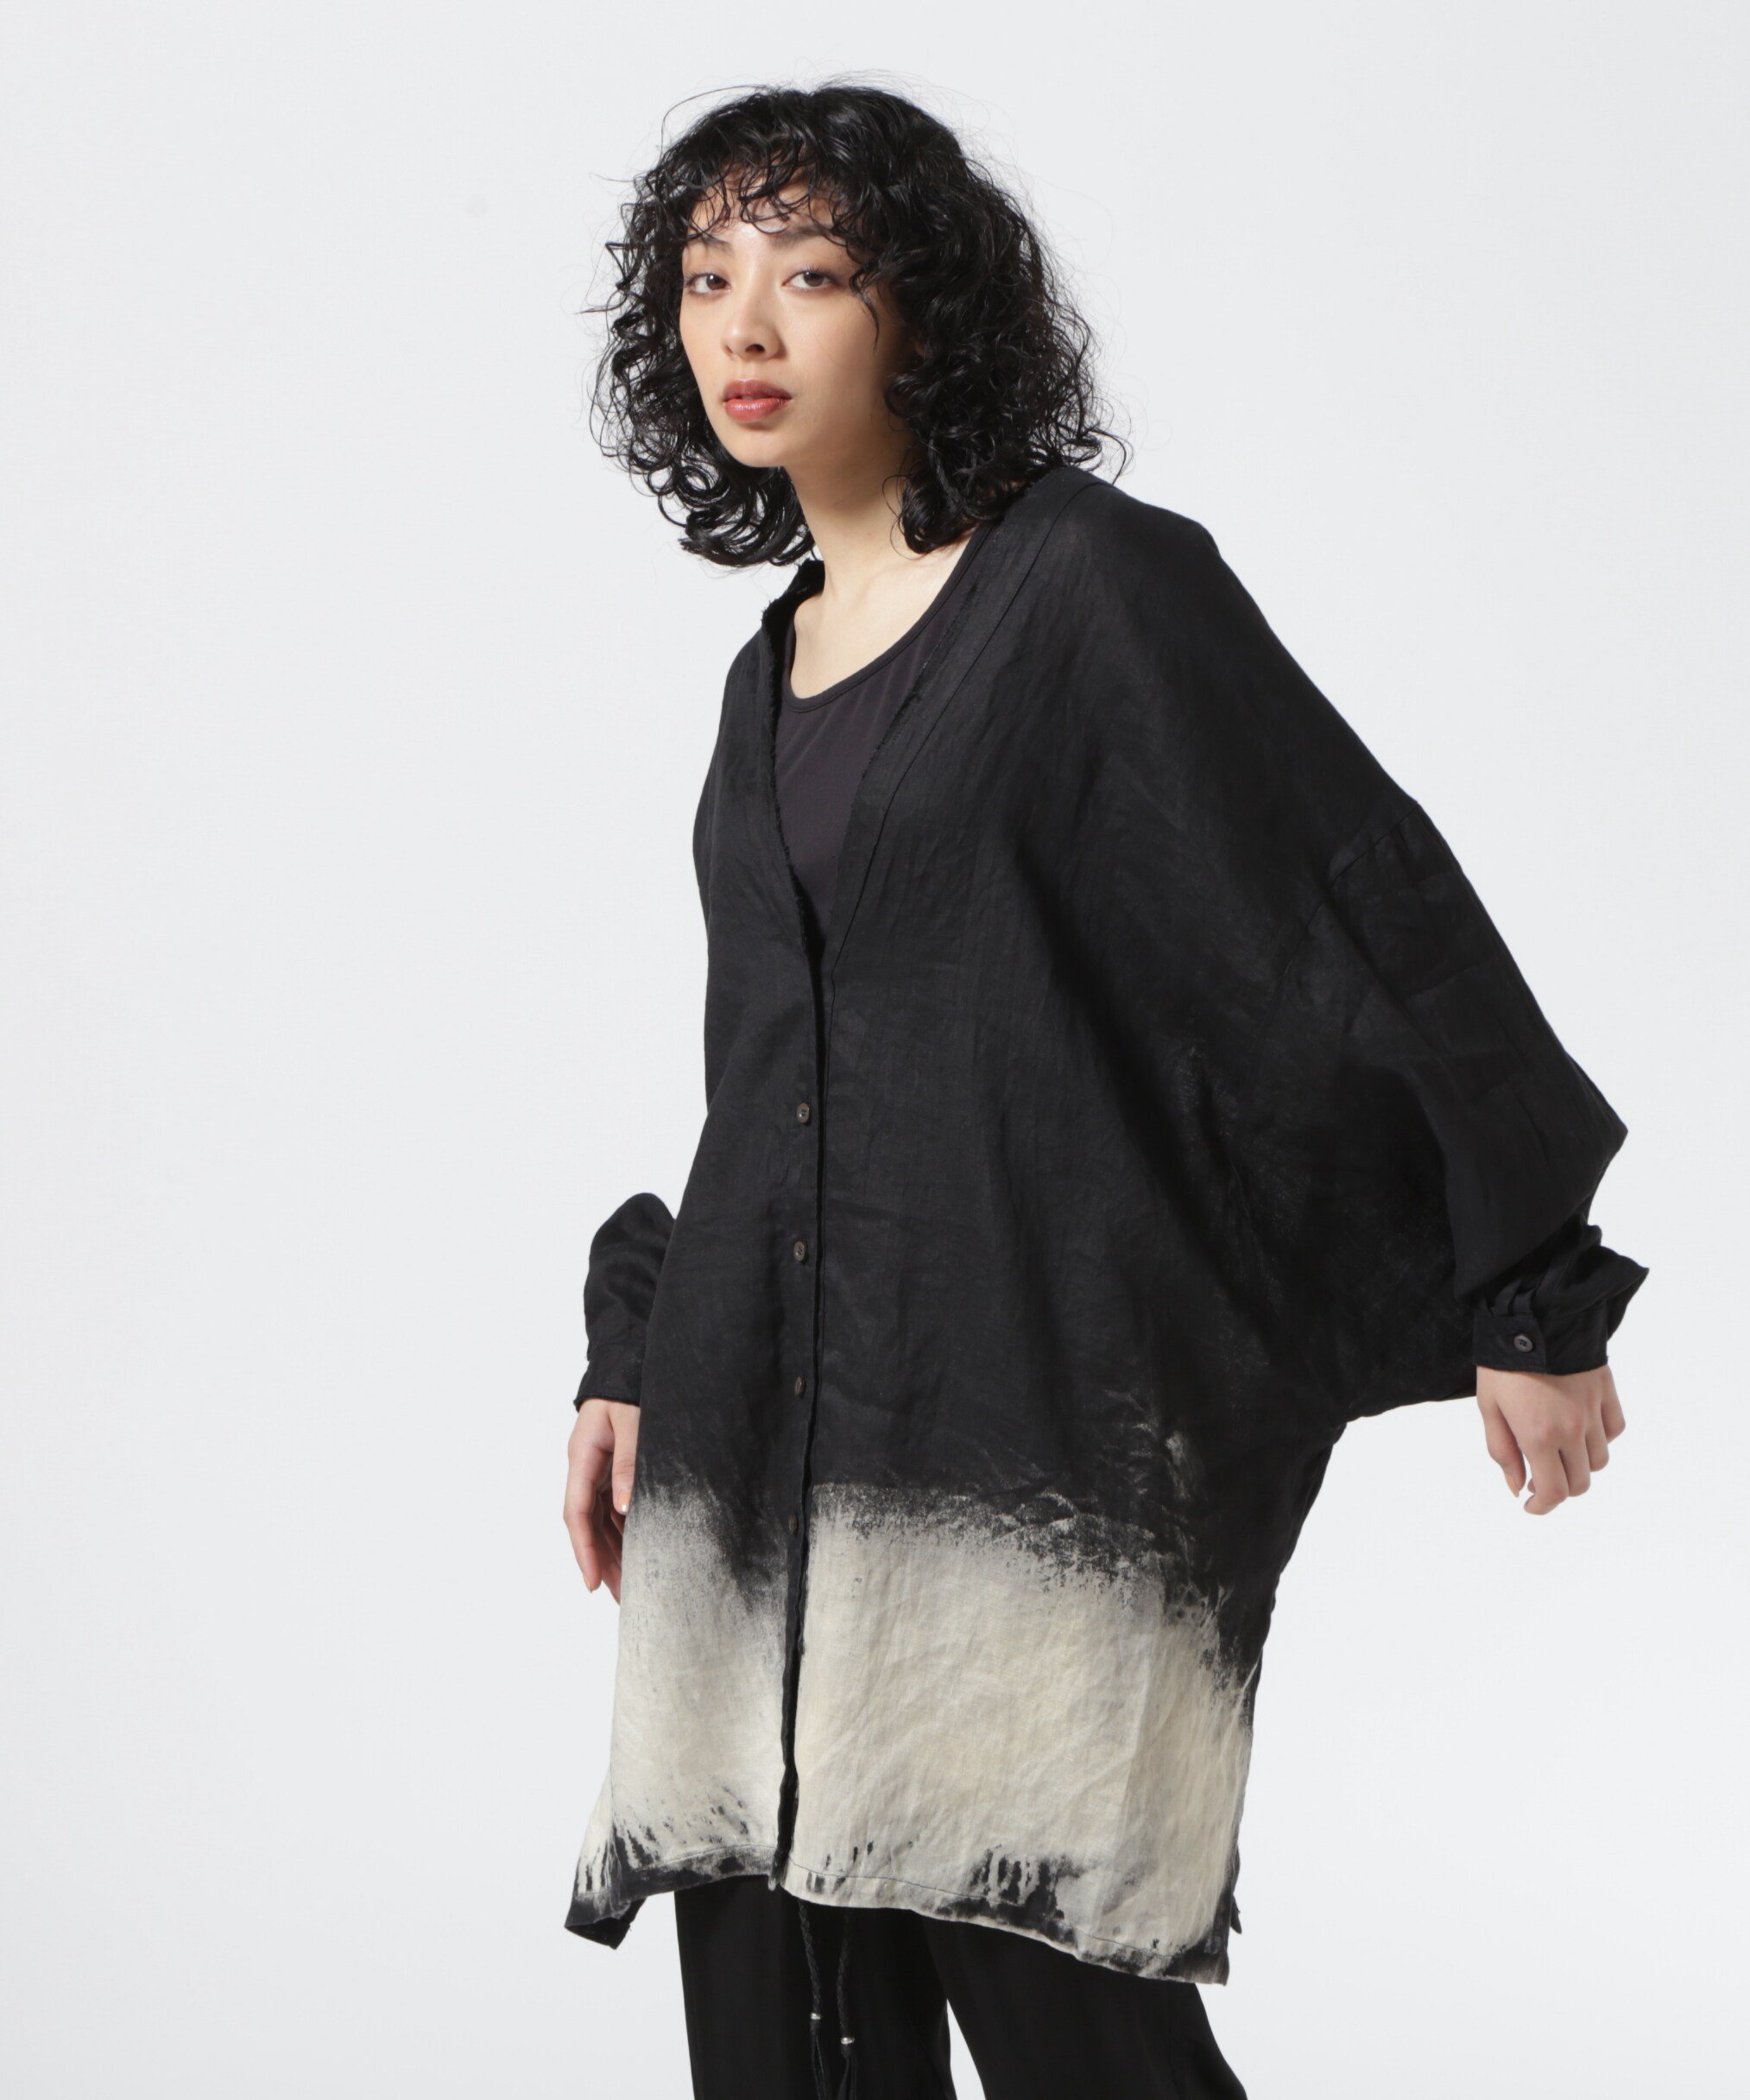 ROYAL FLASH KMRii/ケムリ/Discharged Linen Kimono Shirt ロイヤルフラッシュ トップス カーディガン ブラック【送料無料】